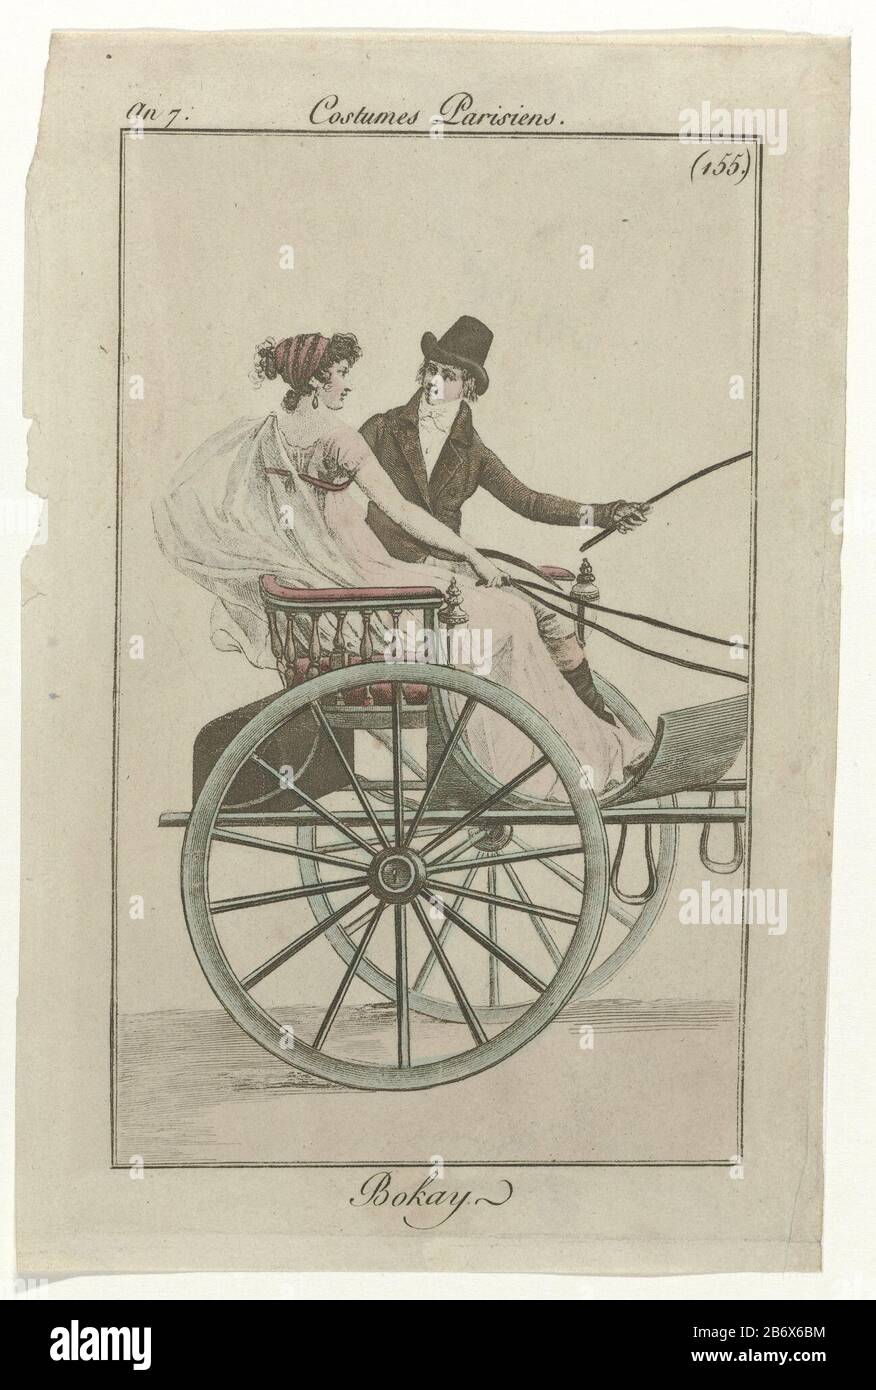 Journal des Dames et des Modes, Kostüm Parisien, 1799, Ein 7 (155) Bokay  Mann und Frau in einer Kutsche. Die Frau trägt ein Kleid mit kurzen Ärmeln  und hoher Taille. Links ein